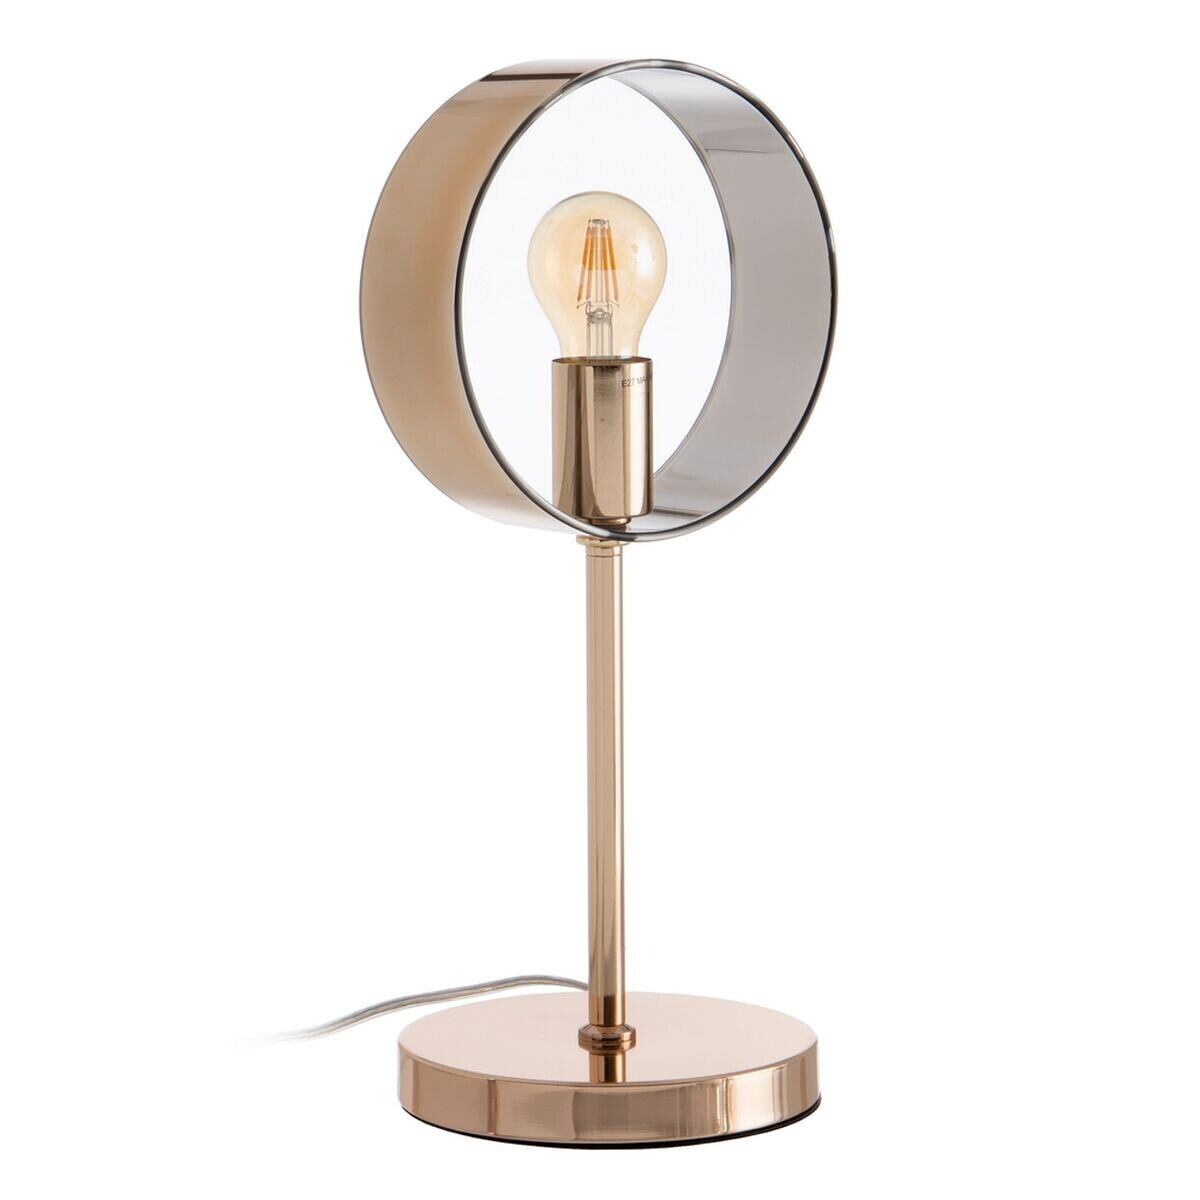 Desk lamp Golden Metal Crystal Iron Hierro/Cristal 60 W 220 V 240 V 220 -240 V 20 x 18 x 44 cm